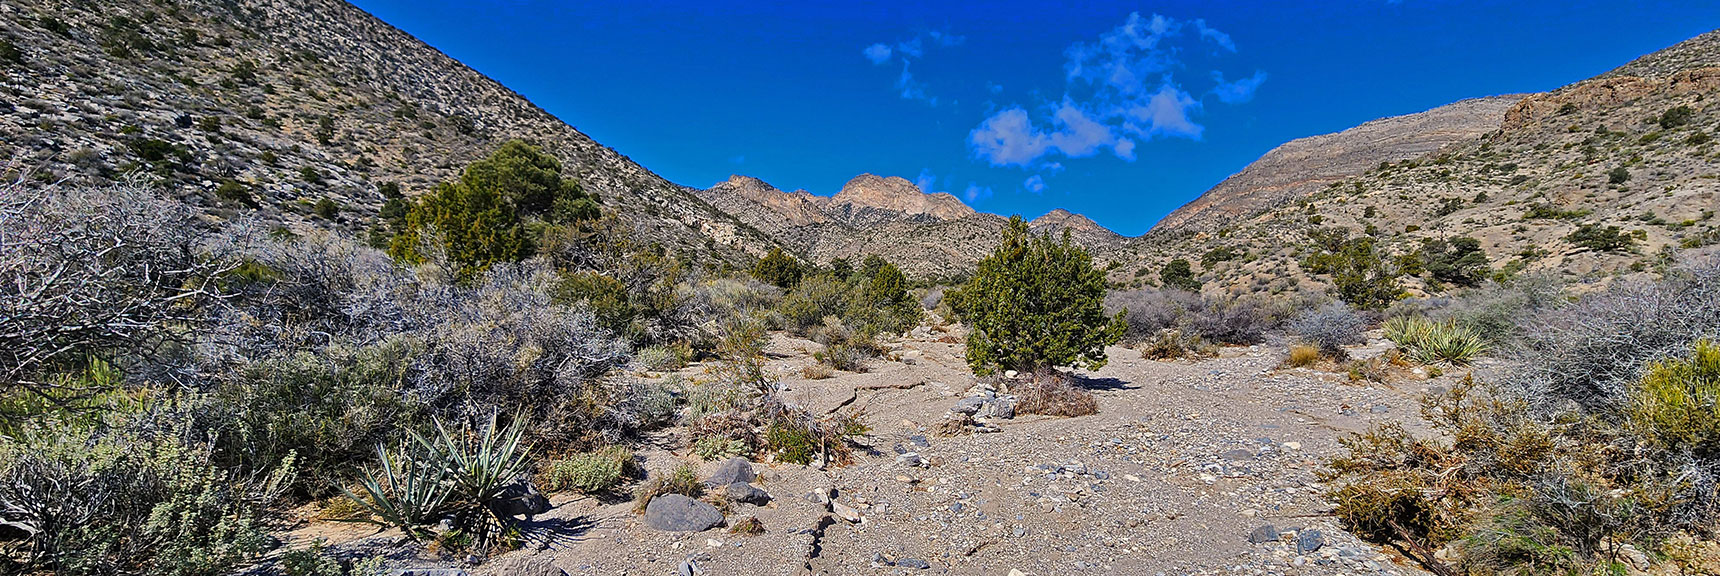 Same Wash/Road Now Rounds to Become Damsel Peak North Wash | Damsel Peak Loop | Gateway Peak | Brownstone Basin, Nevada